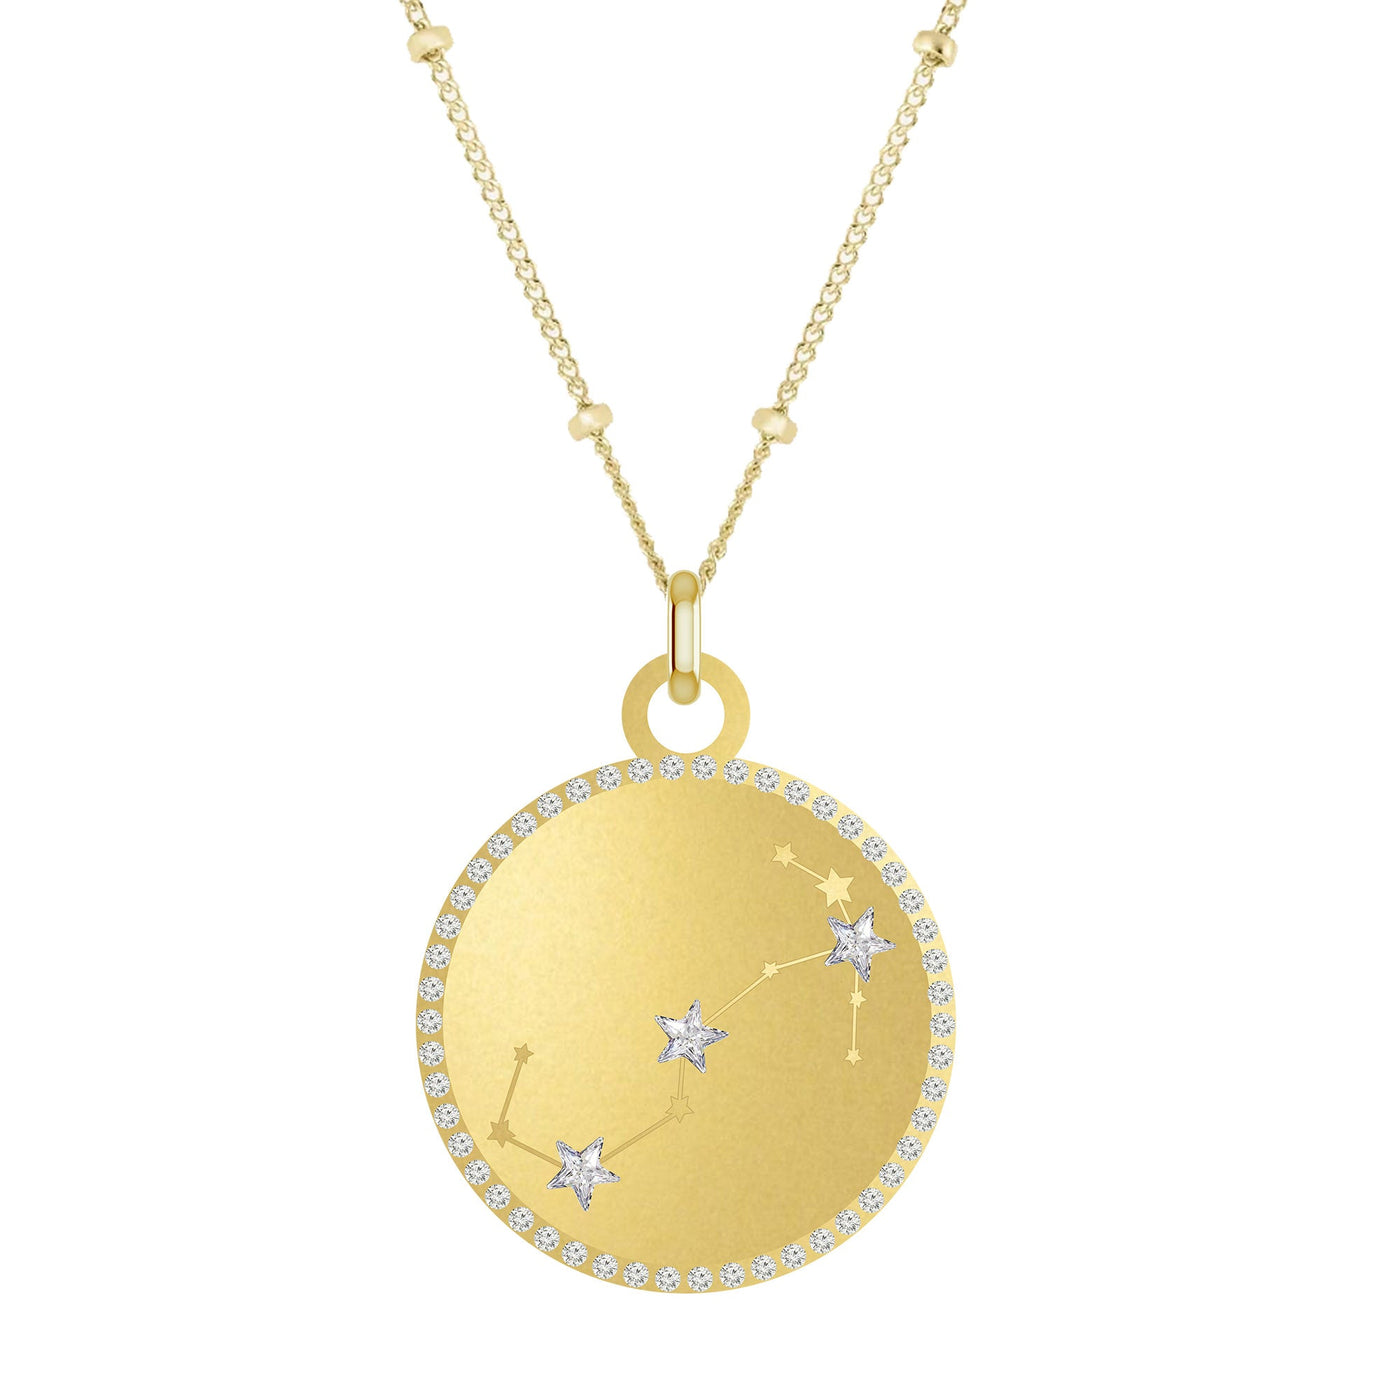 SAGITTARIUS Round Zodiac Constellation with Stars Necklace